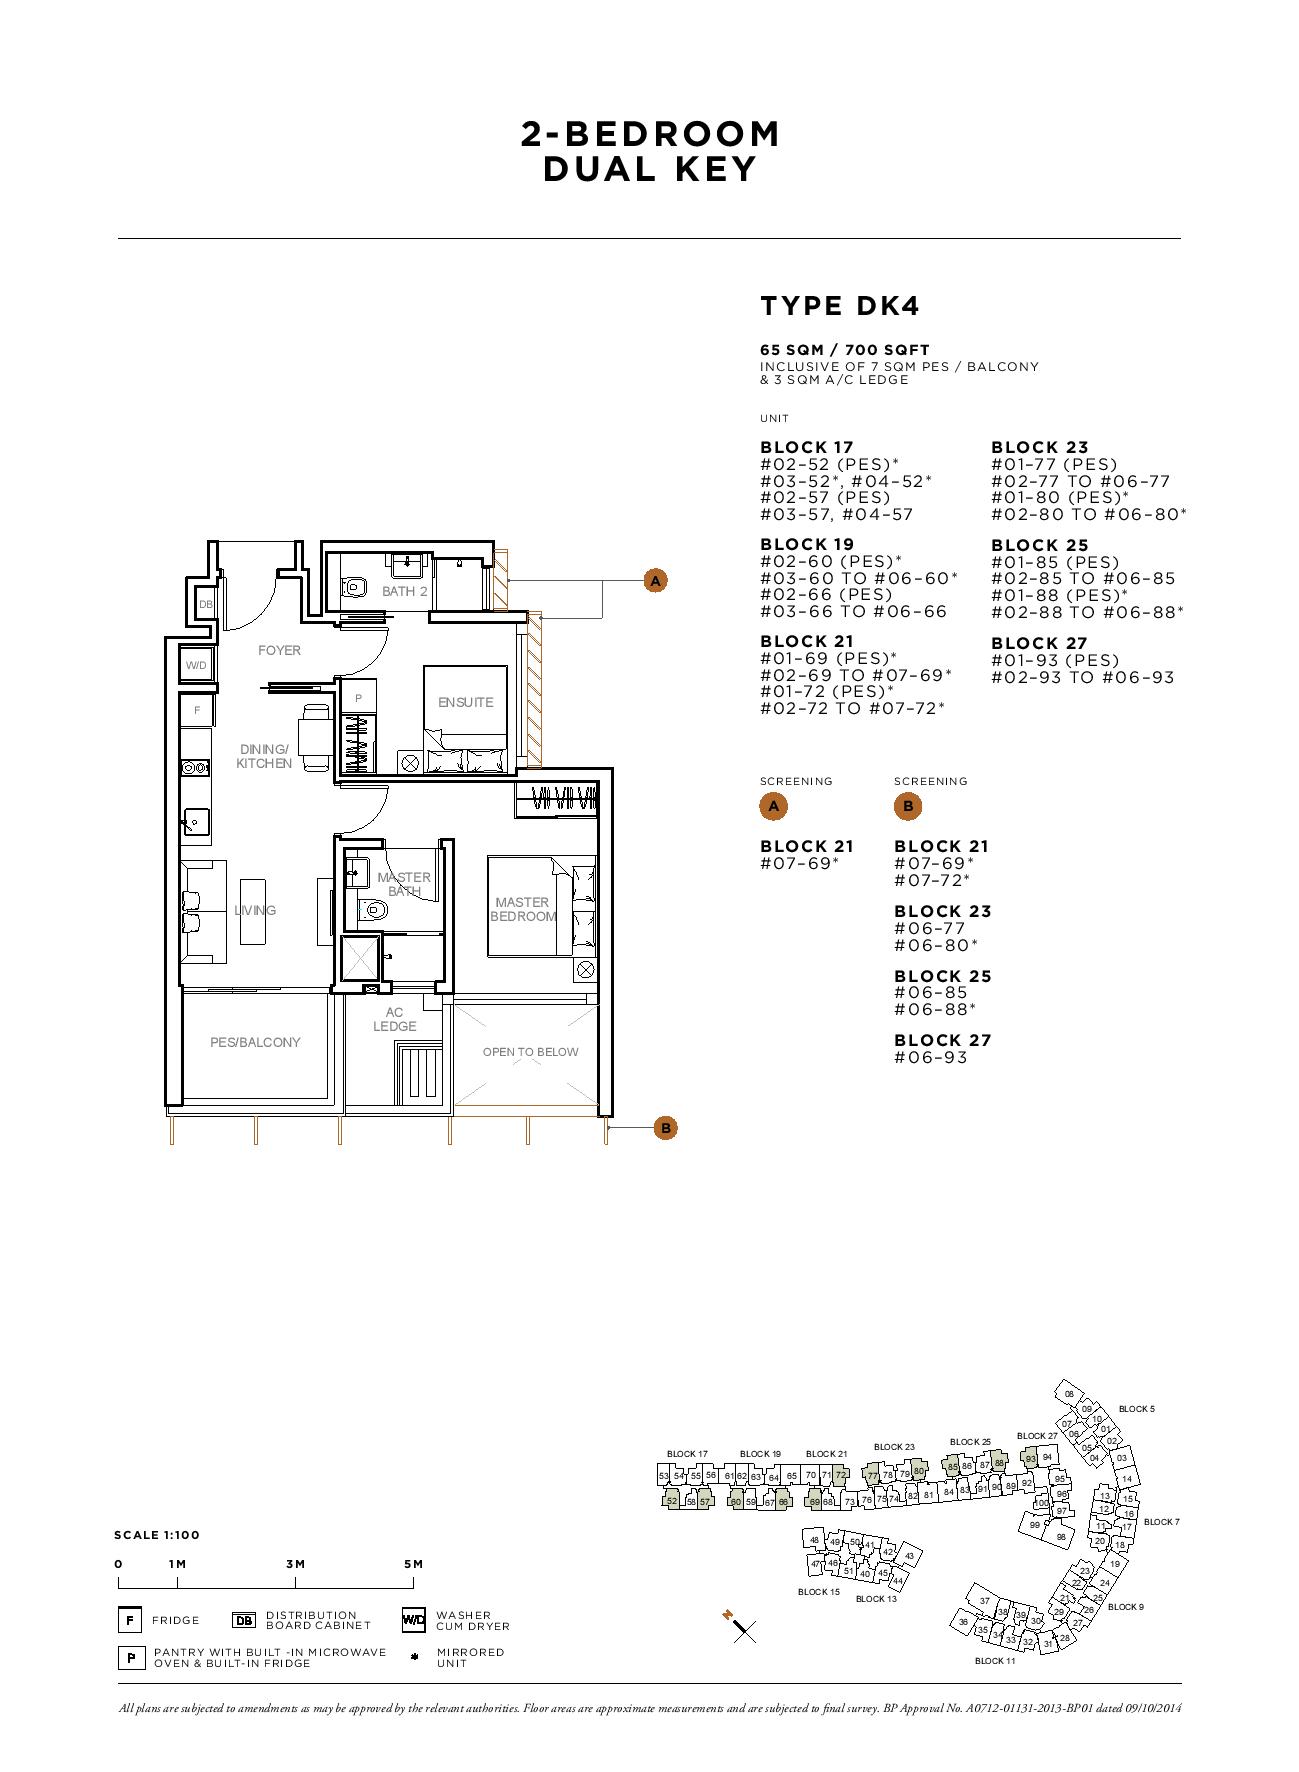 Sophia Hills 2 Bedroom Dual Key Type DK4 Floor Plans